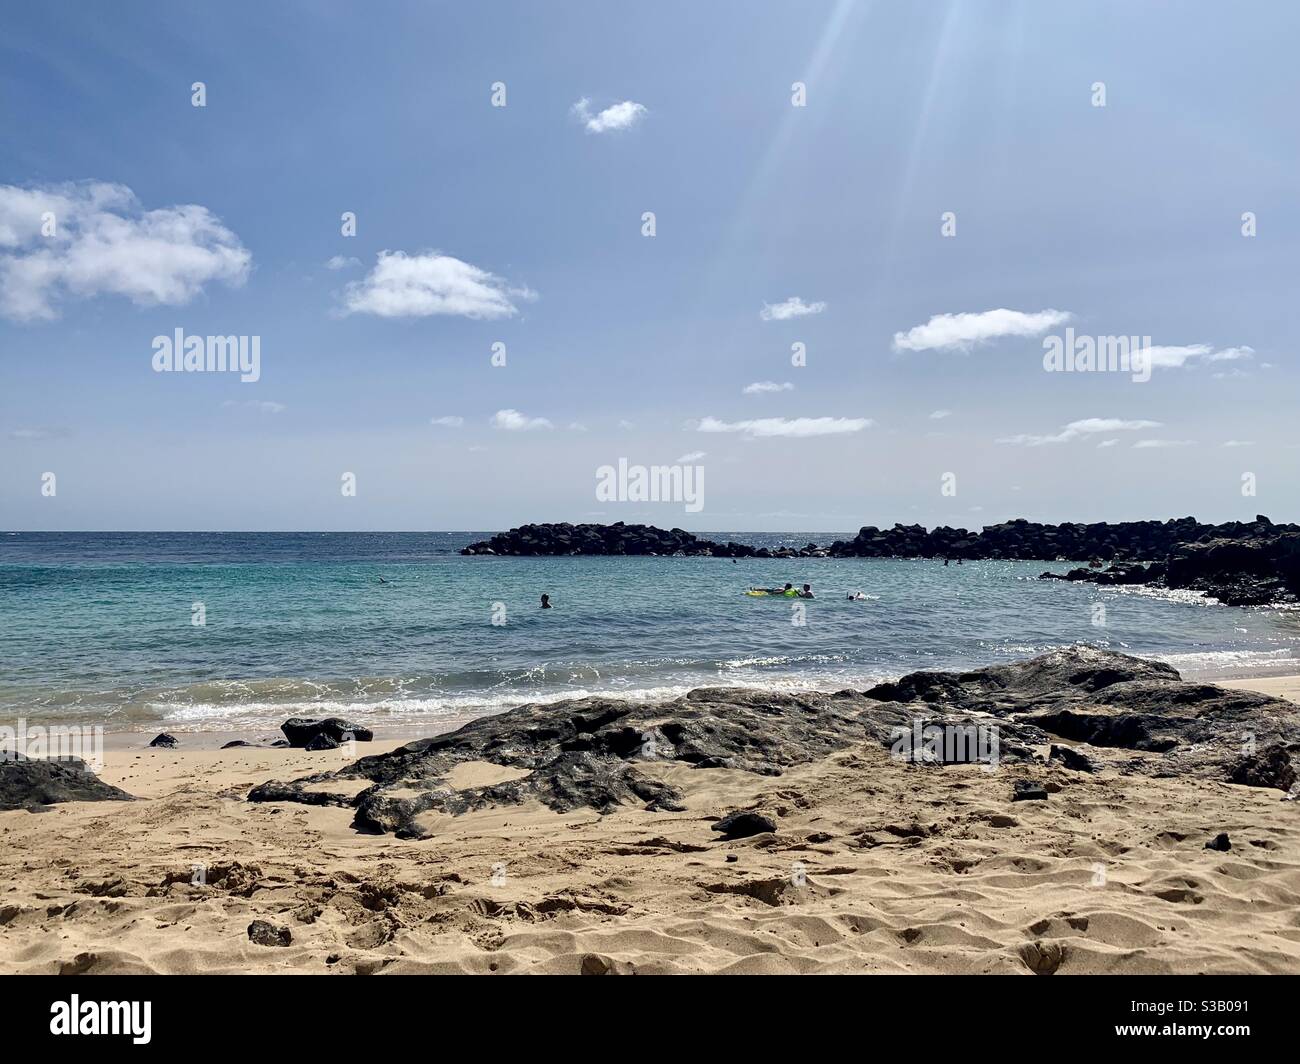 Playa de Jablillo, Costa Teguise, Lanzarote. October 2020 Stock Photo